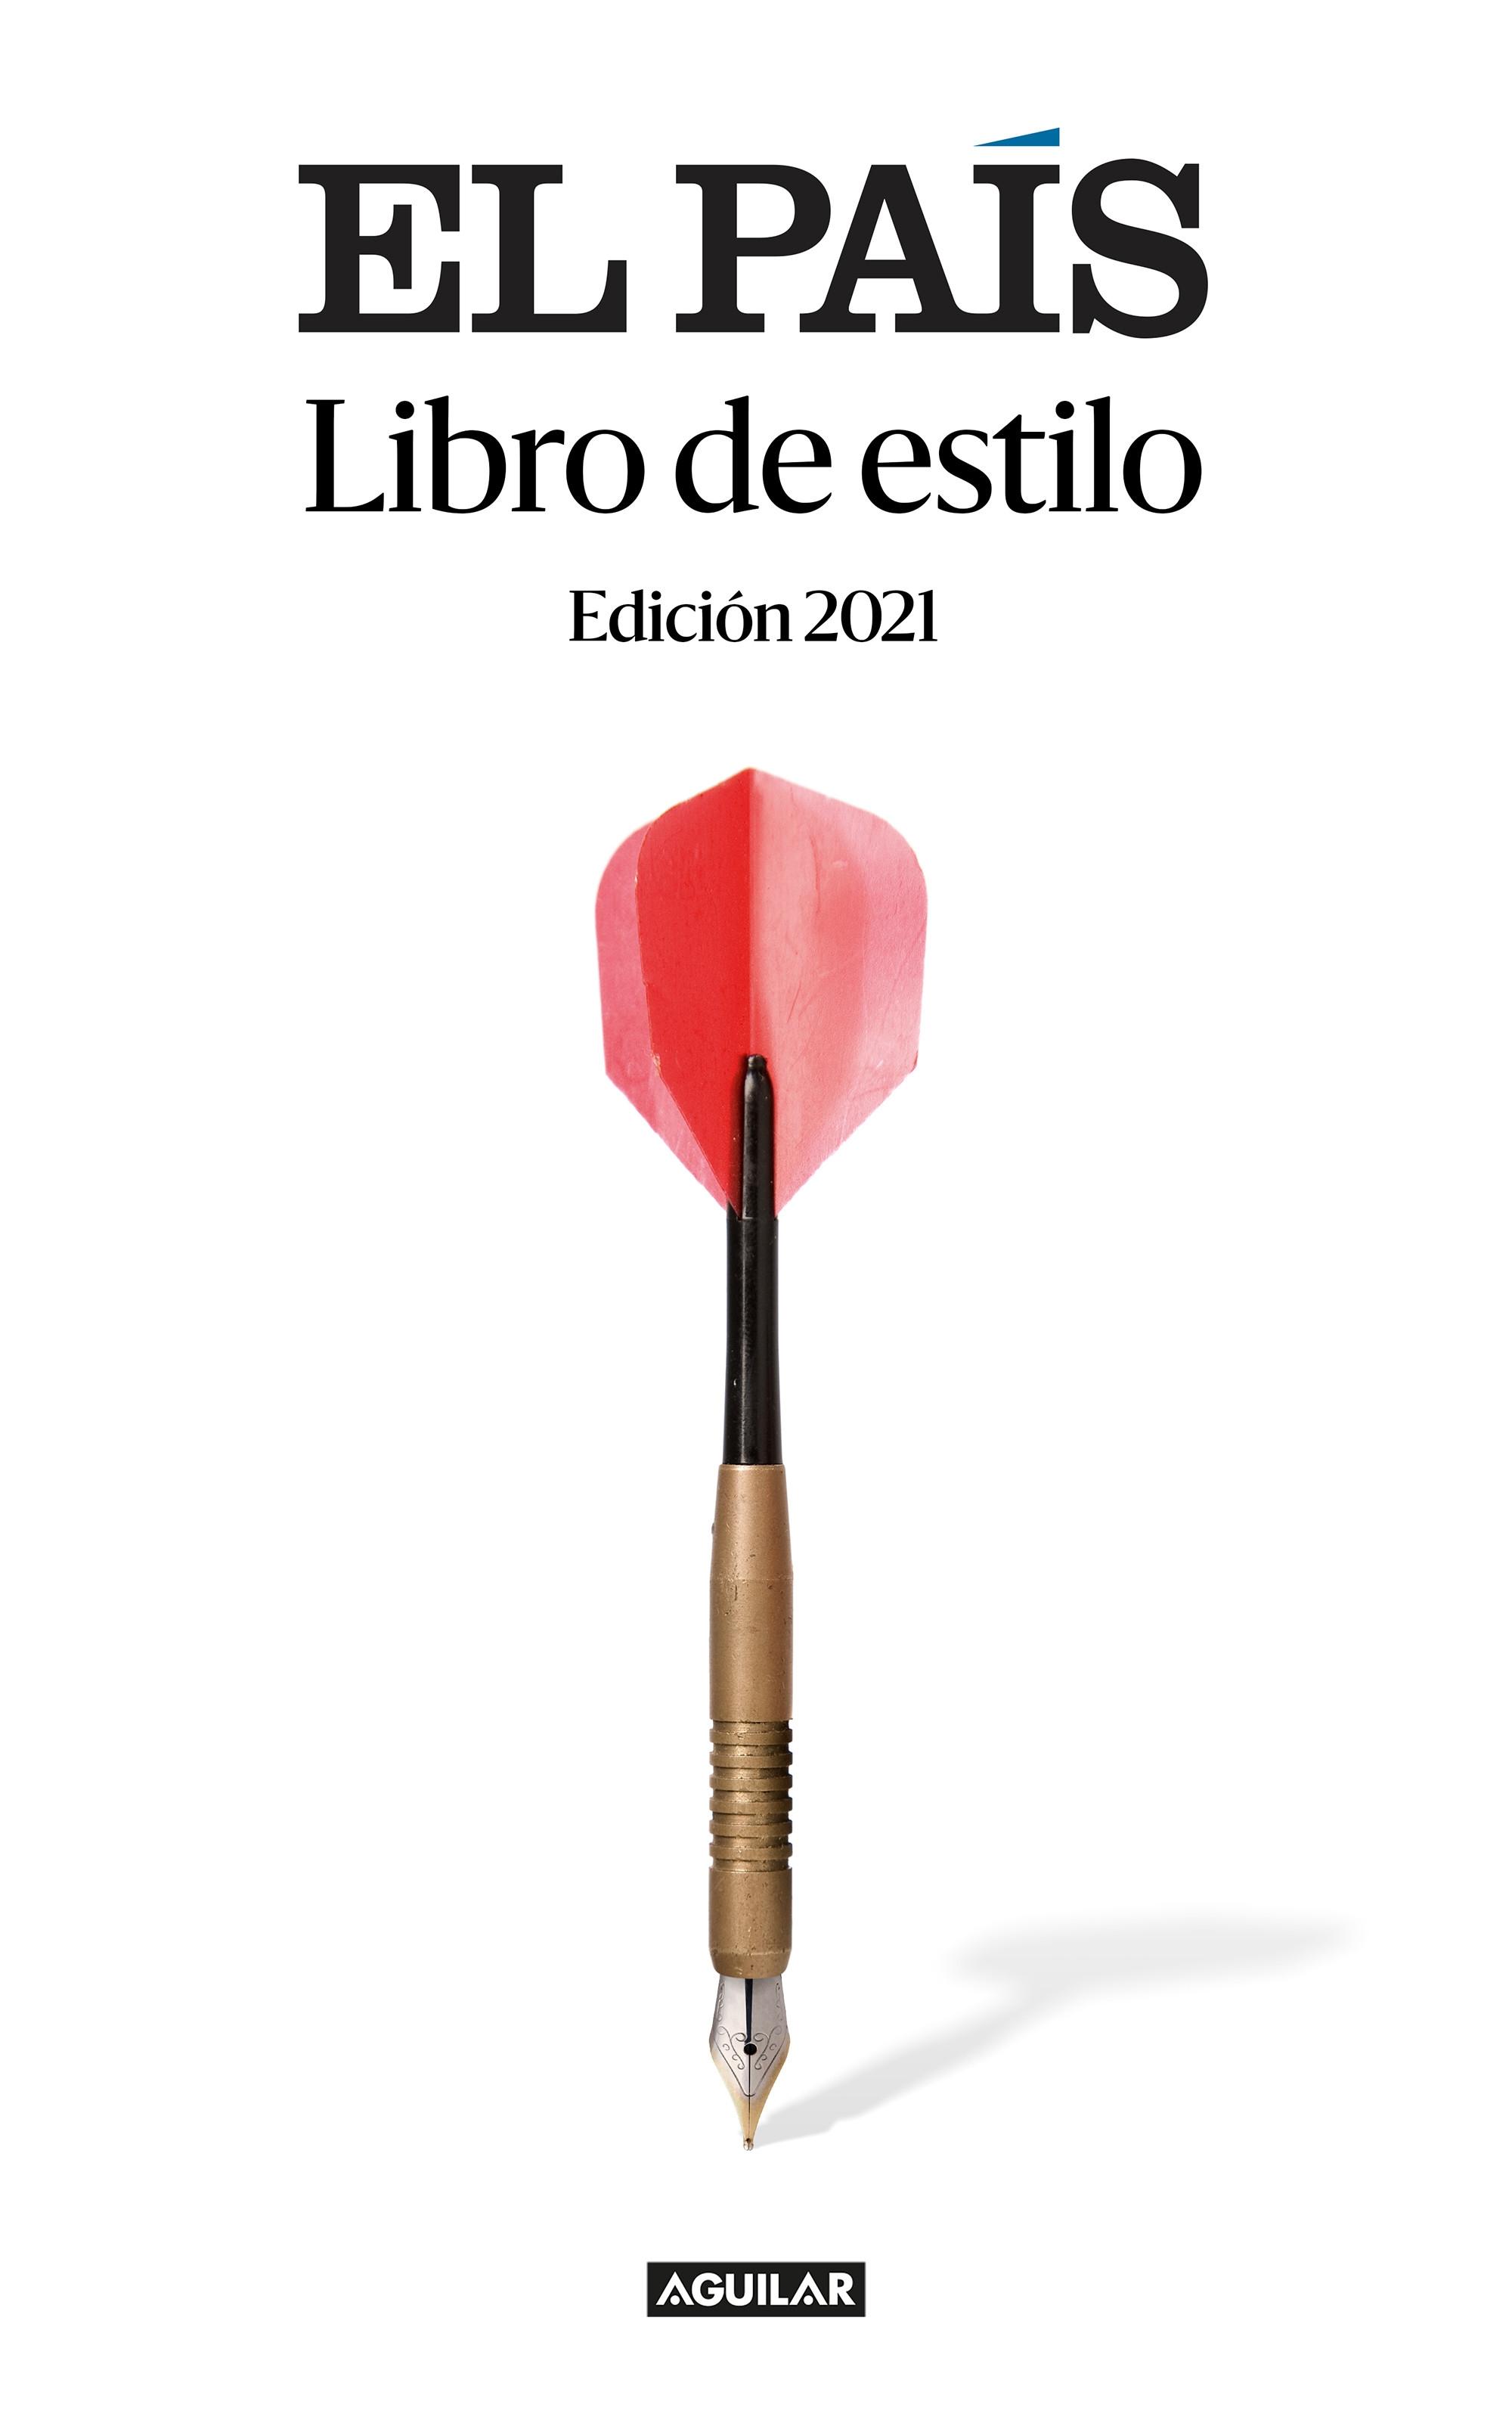 El País. Libro de estilo "(Edición 2021)"